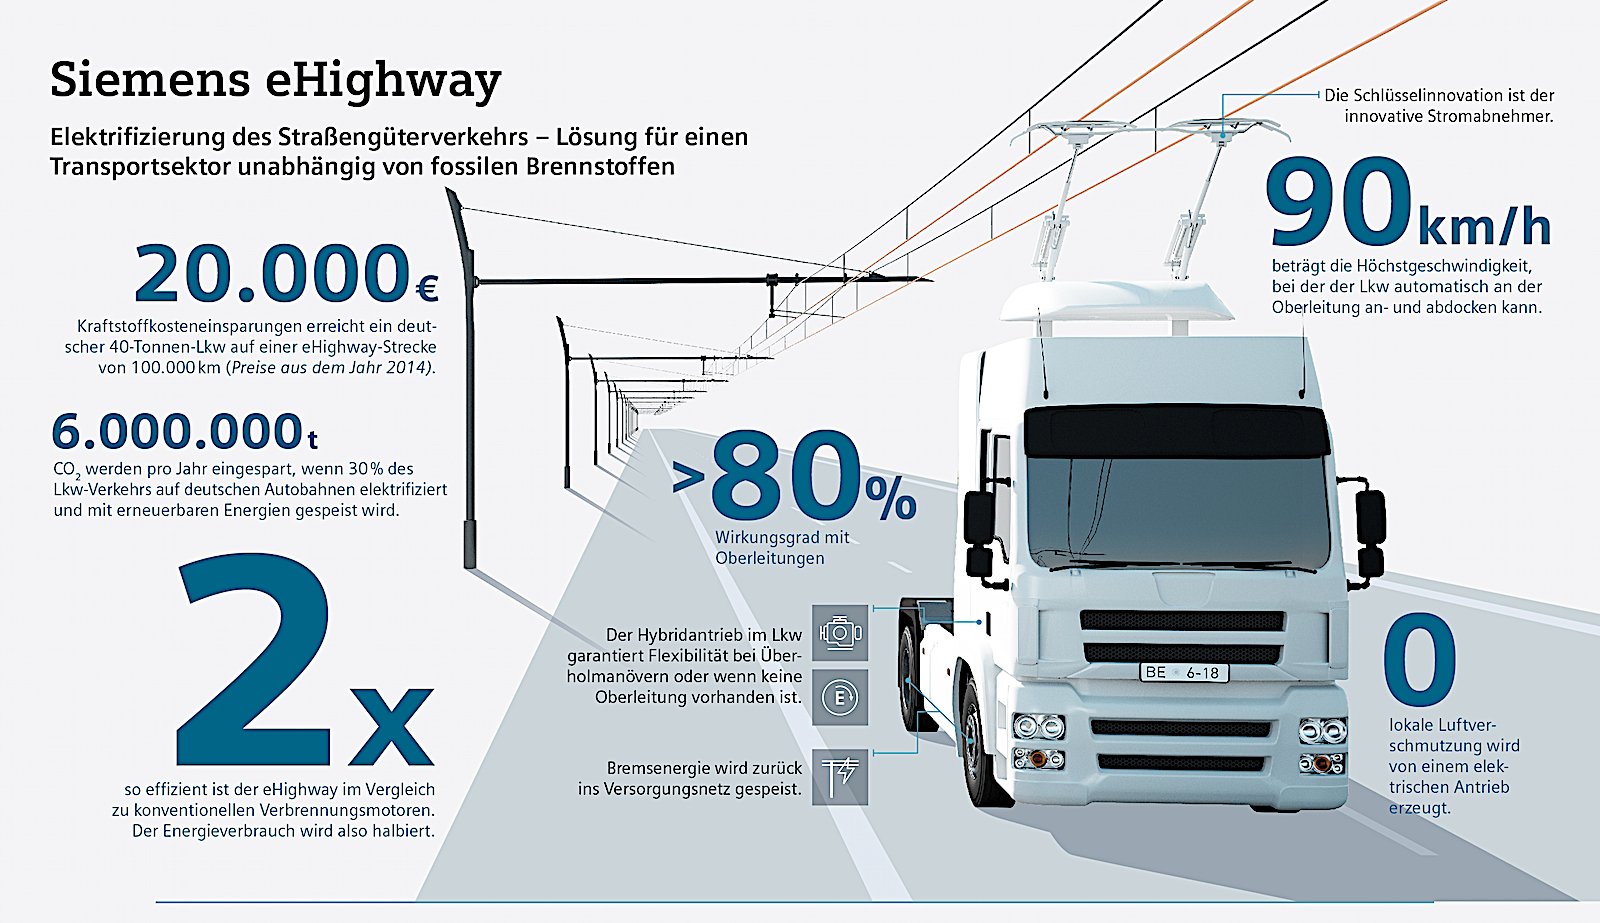 Der eHighway ist laut Siemens im Vergleich zu Verbrennungsmotoren doppelt so effizient. Die Versorgung der Lkw über eine Oberleitung mit Strom soll nicht nur eine Halbierung des Energieverbrauchs bringen, sondern auch eine Verringerung der lokalen Luftverschmutzung.